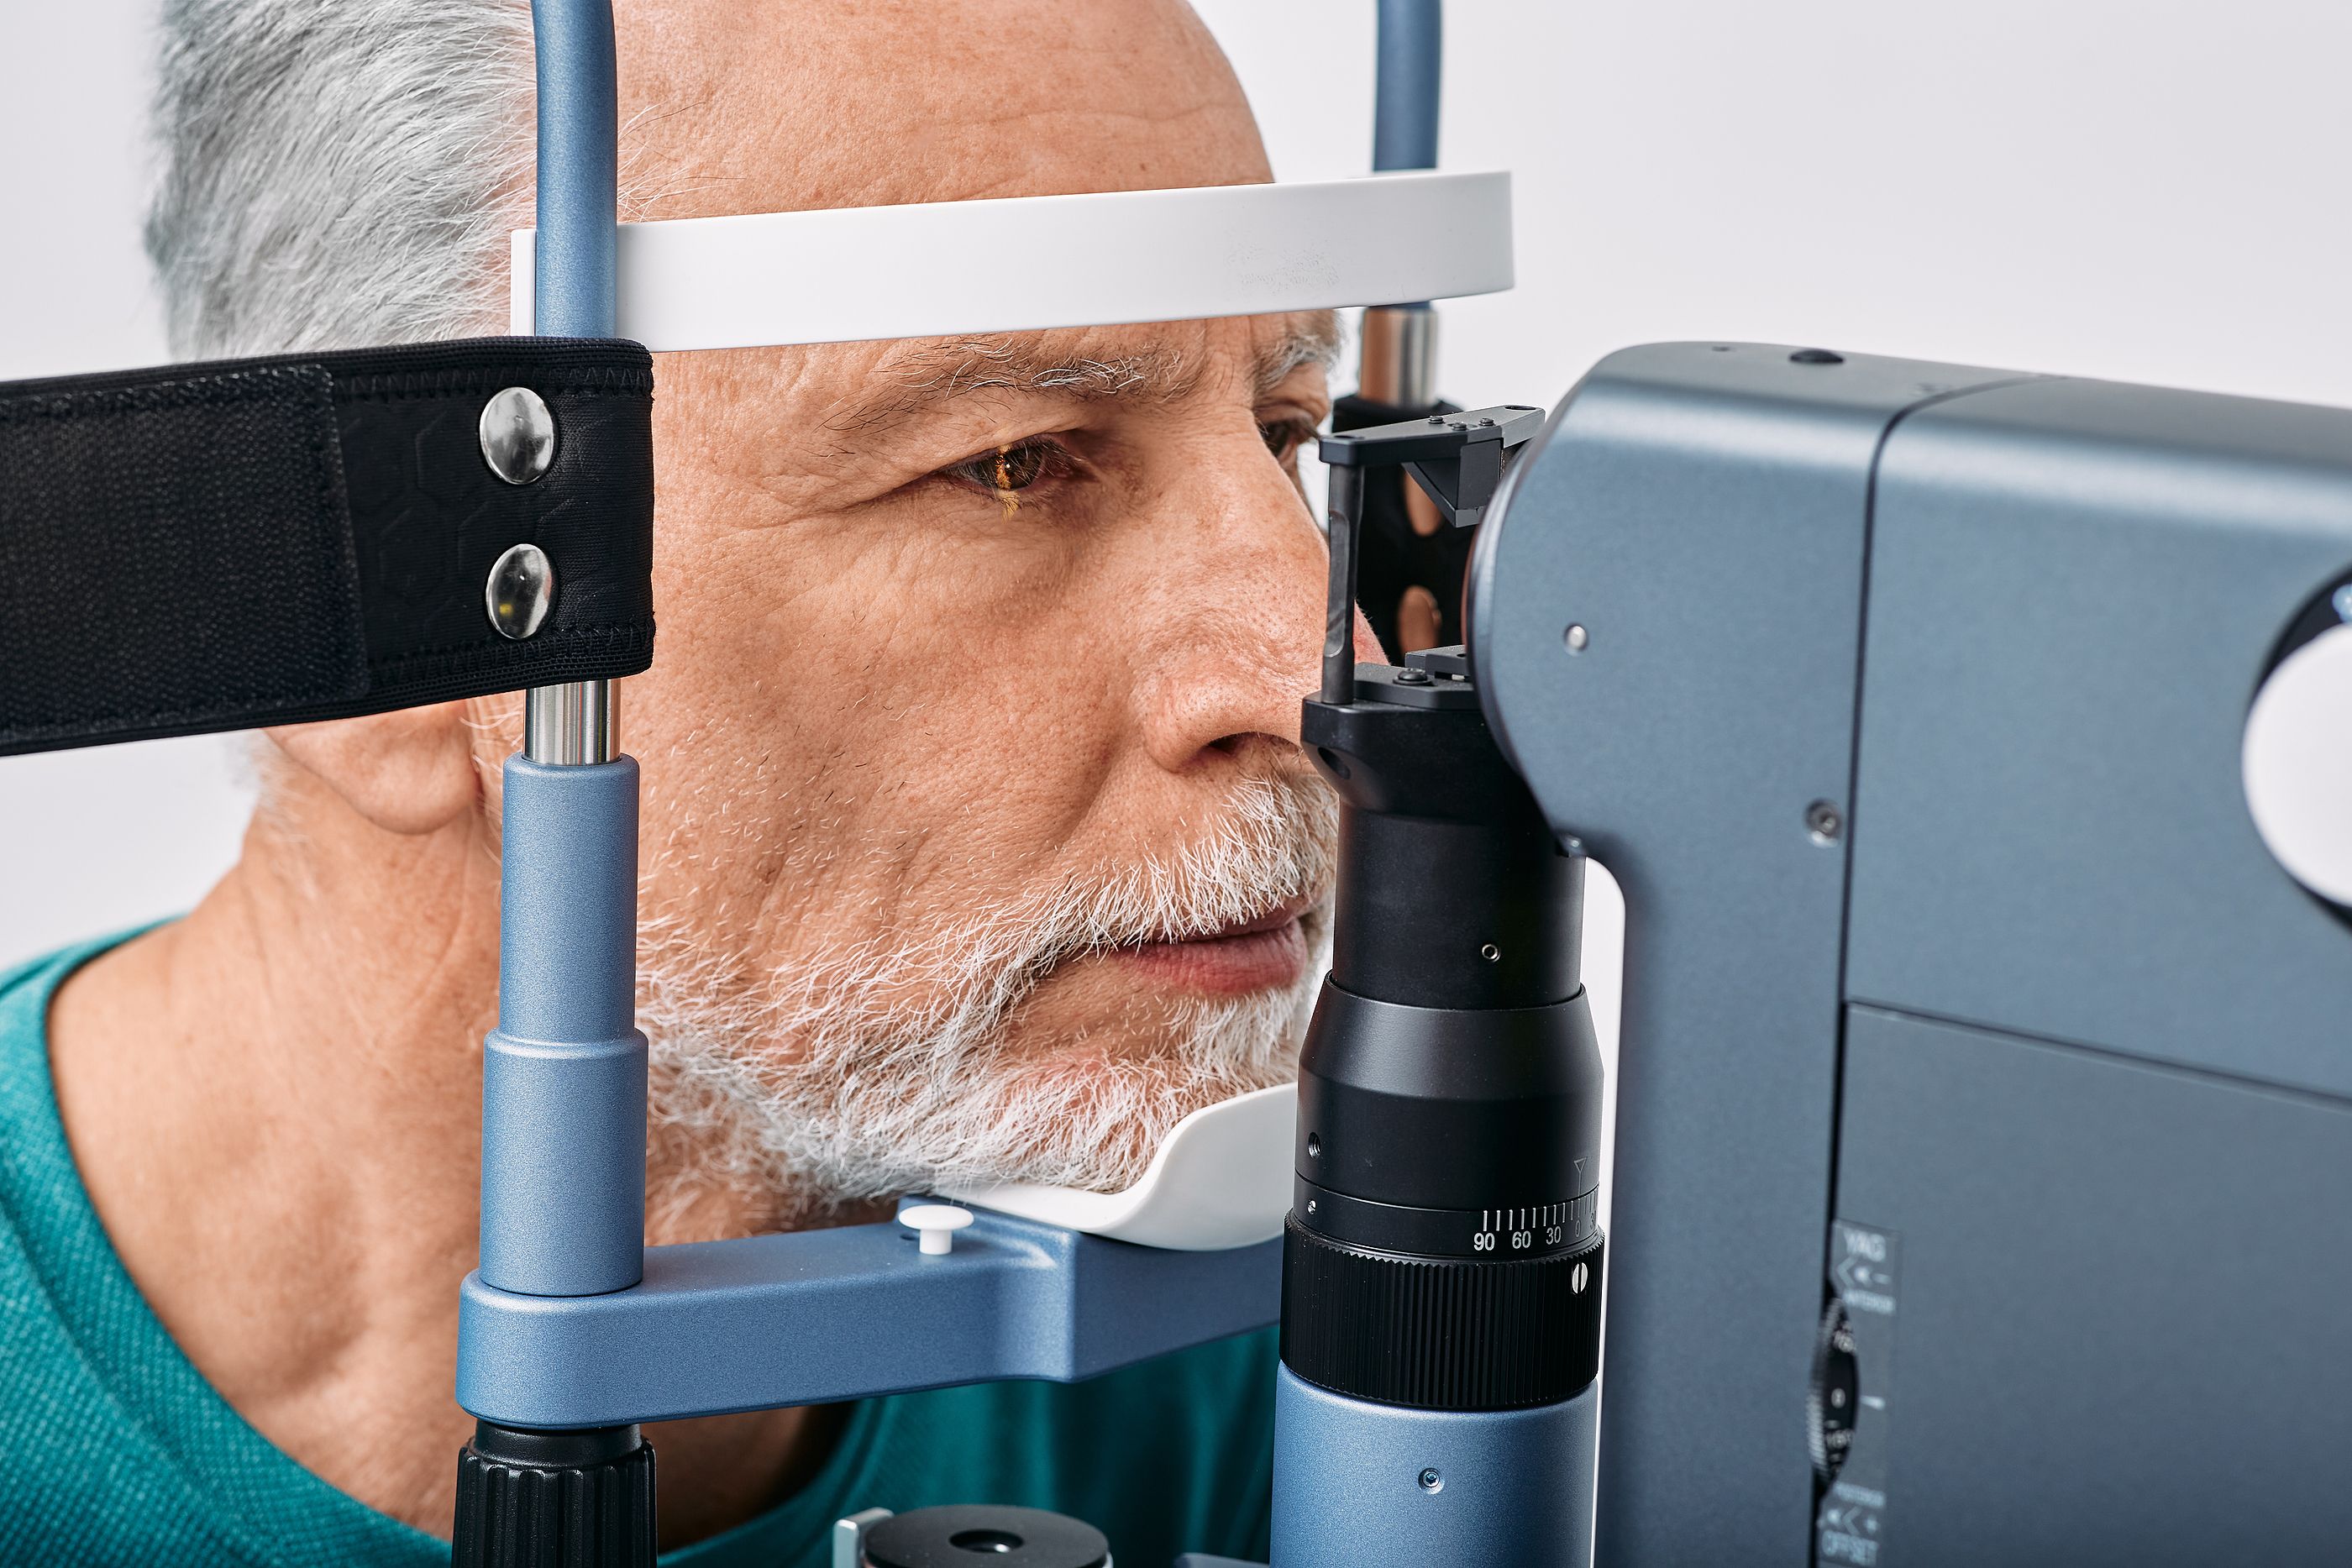 Cambios en la retina que podrían suponer la aparición de alzhéimer